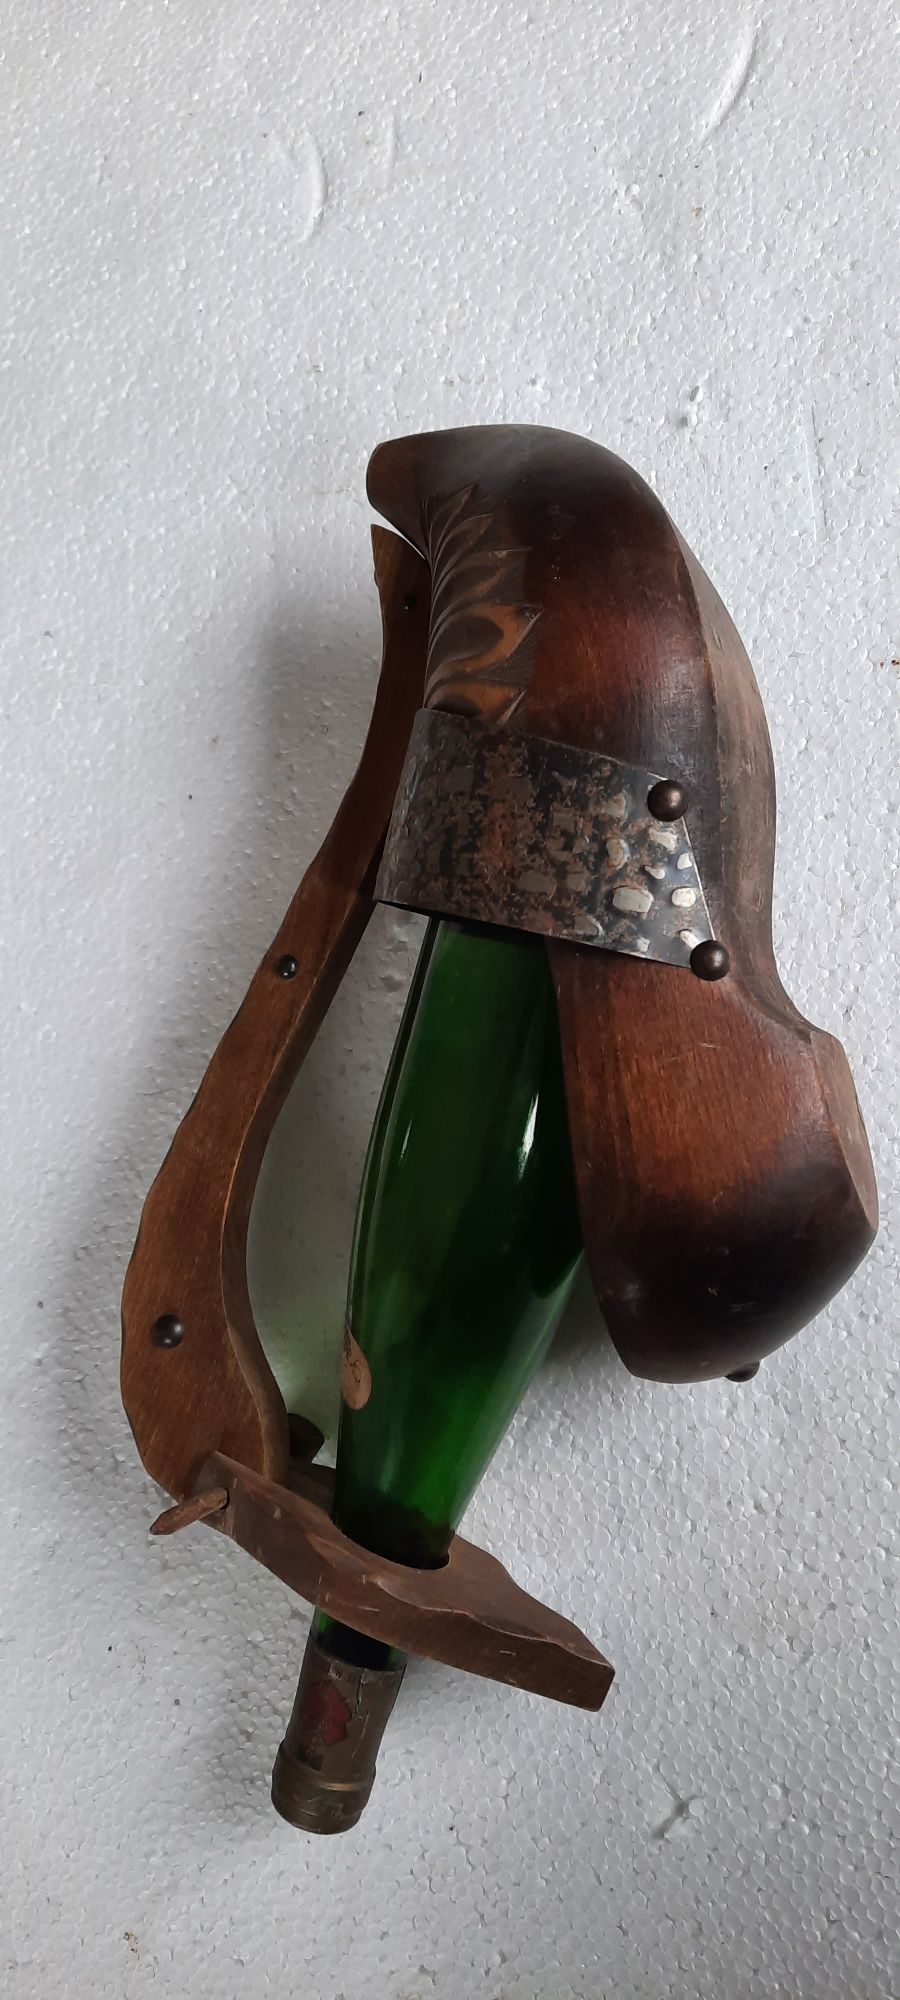 Suport original din lemn masiv pentru sticle de vin